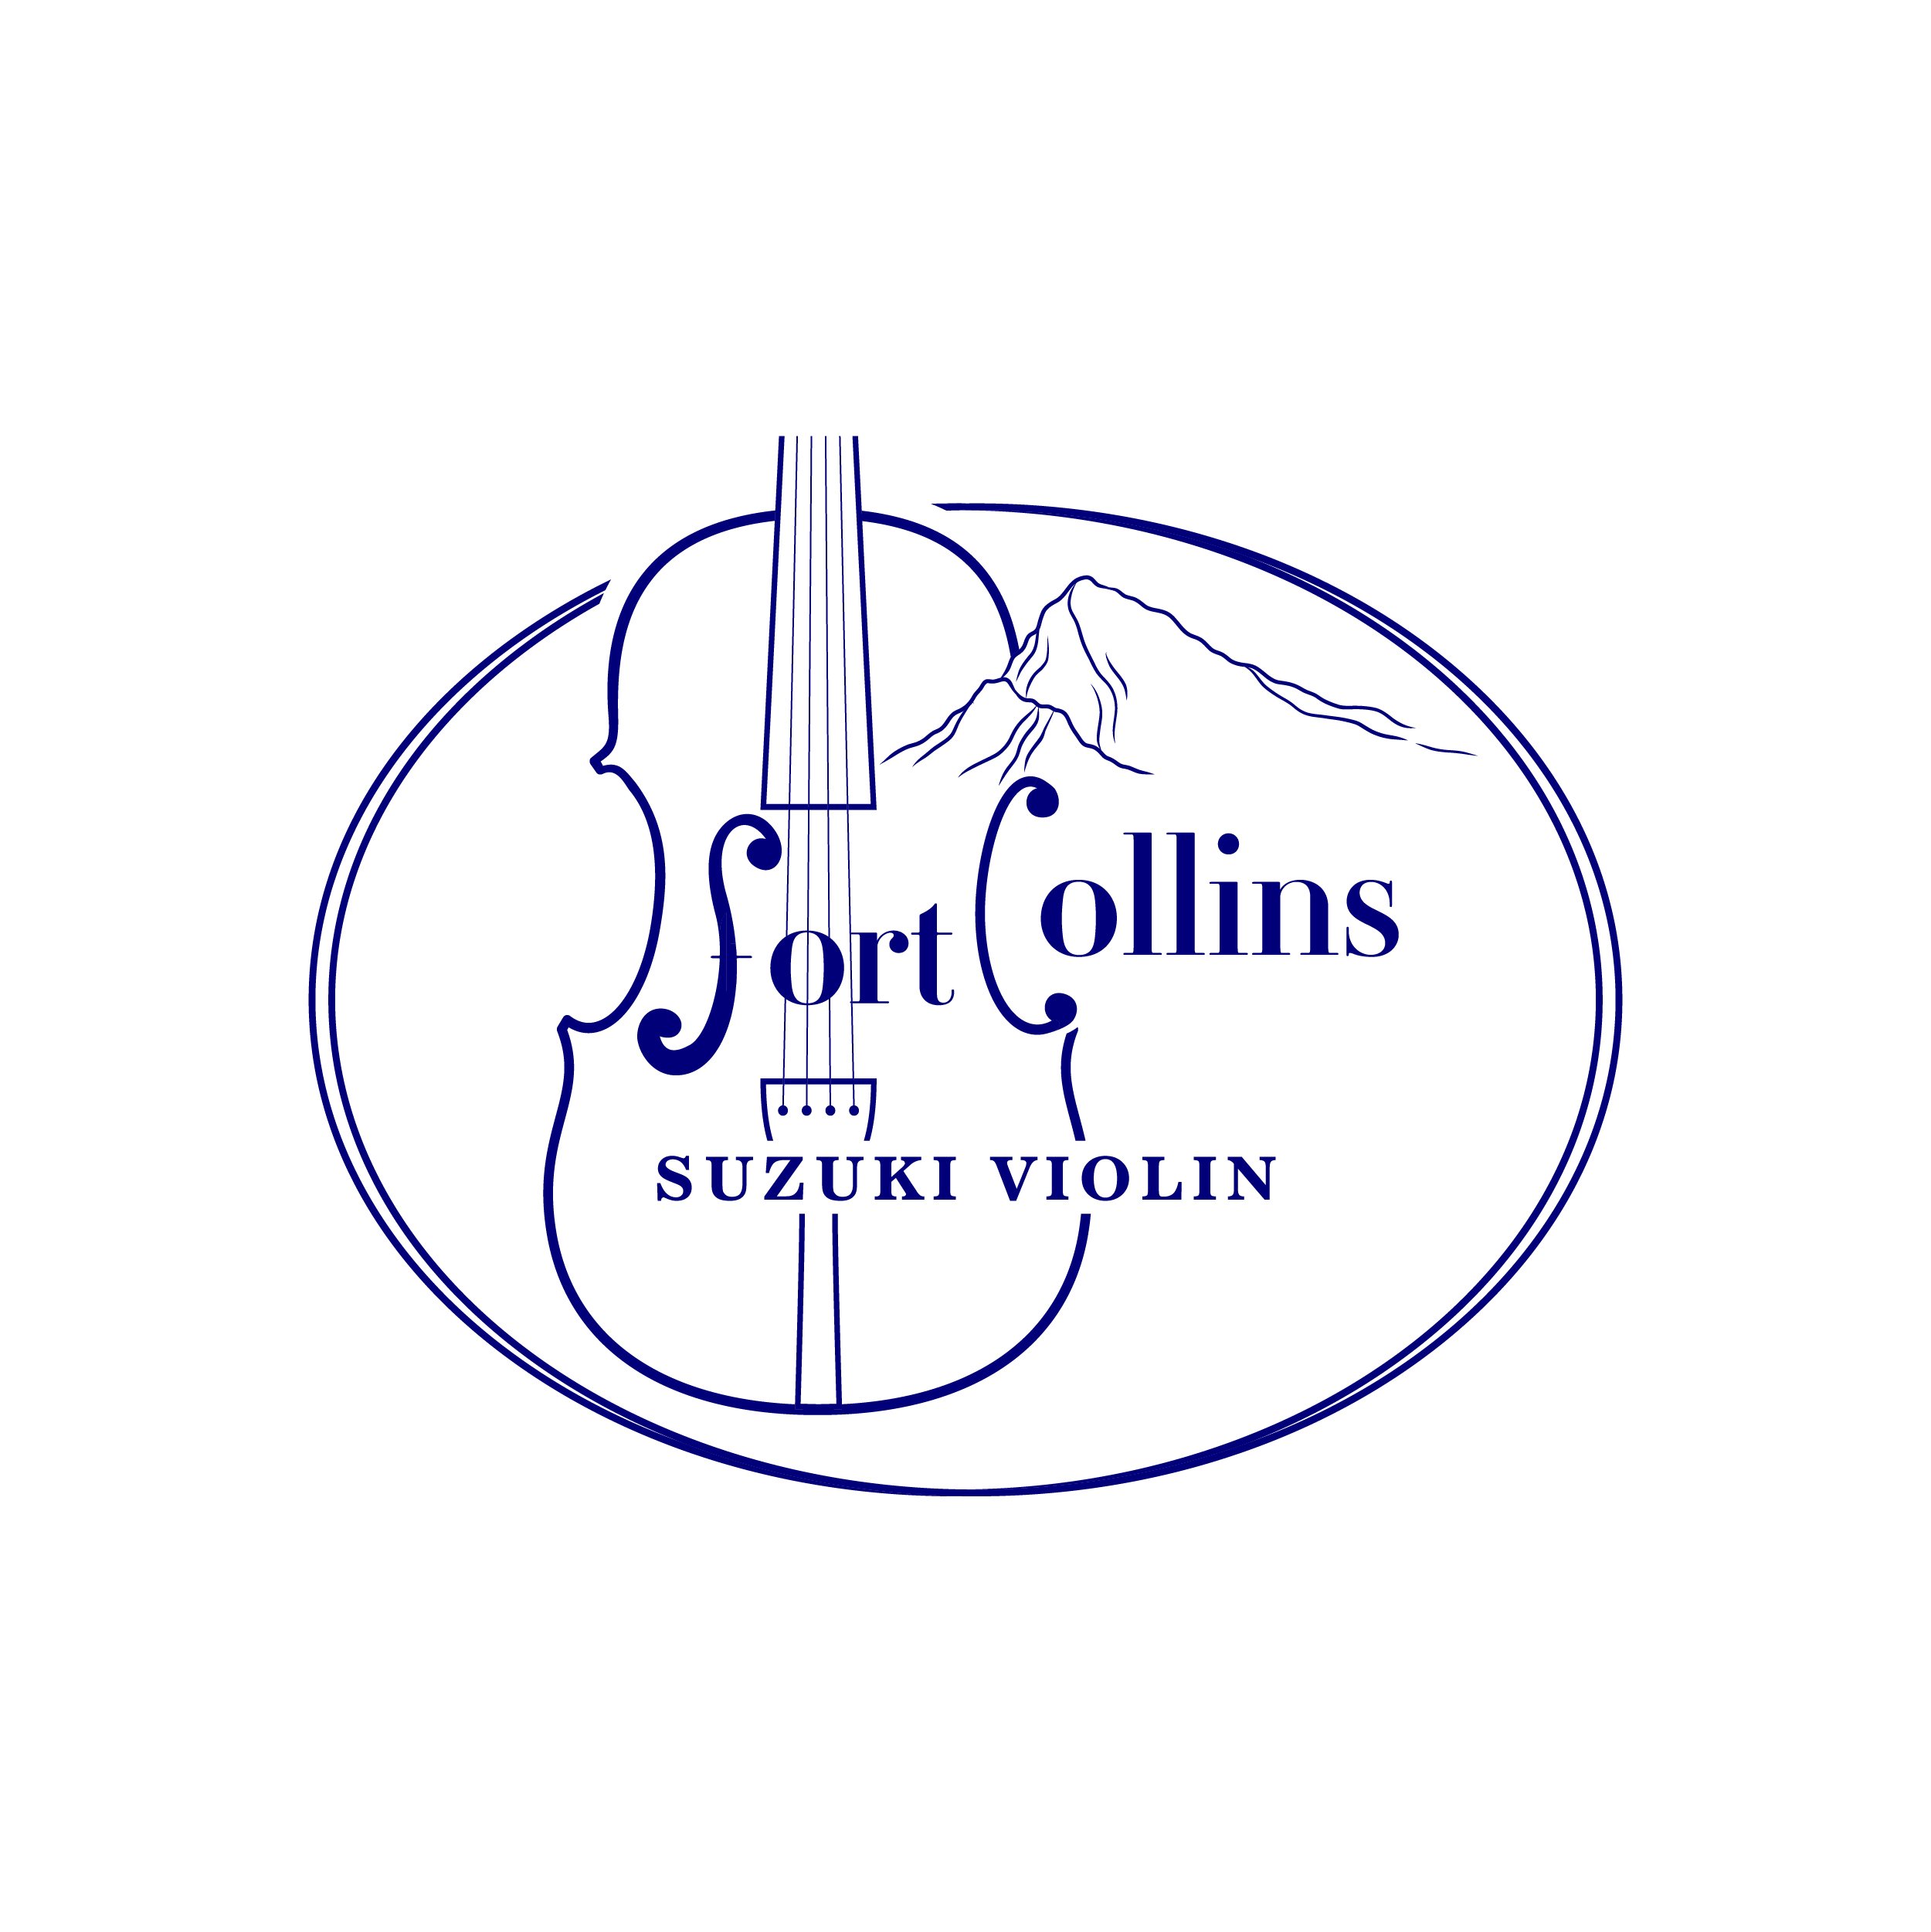 Fort Collins Suzuki Violin LOGO